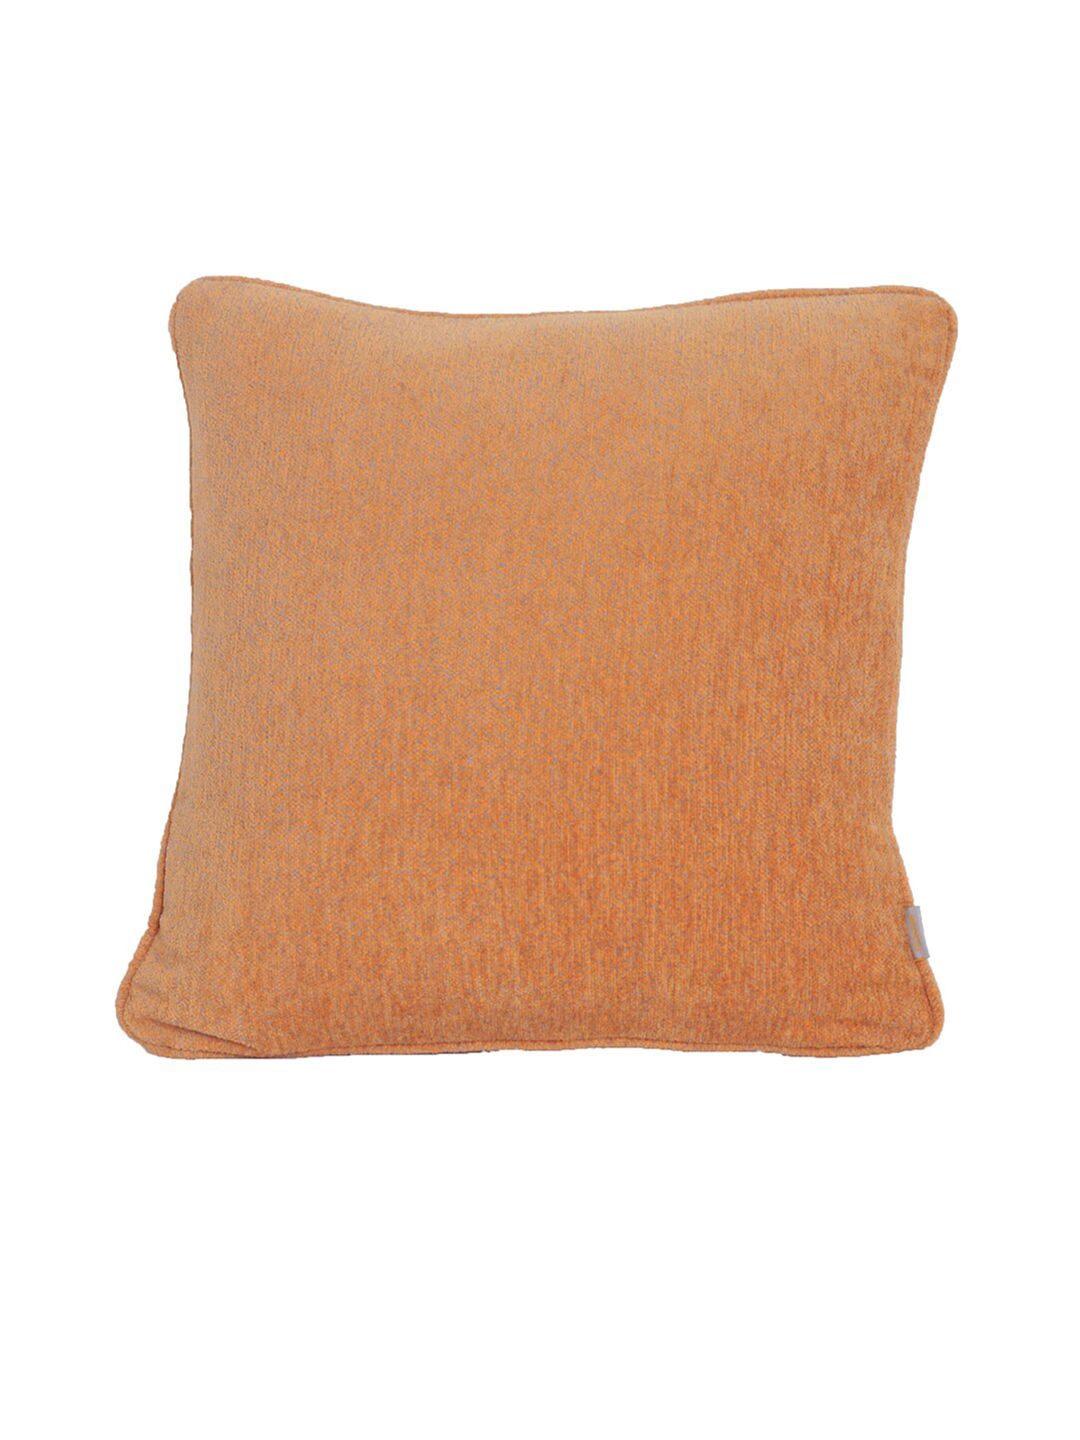 MASPAR Orange Solid Pure Cotton Square Cushion Cover Price in India